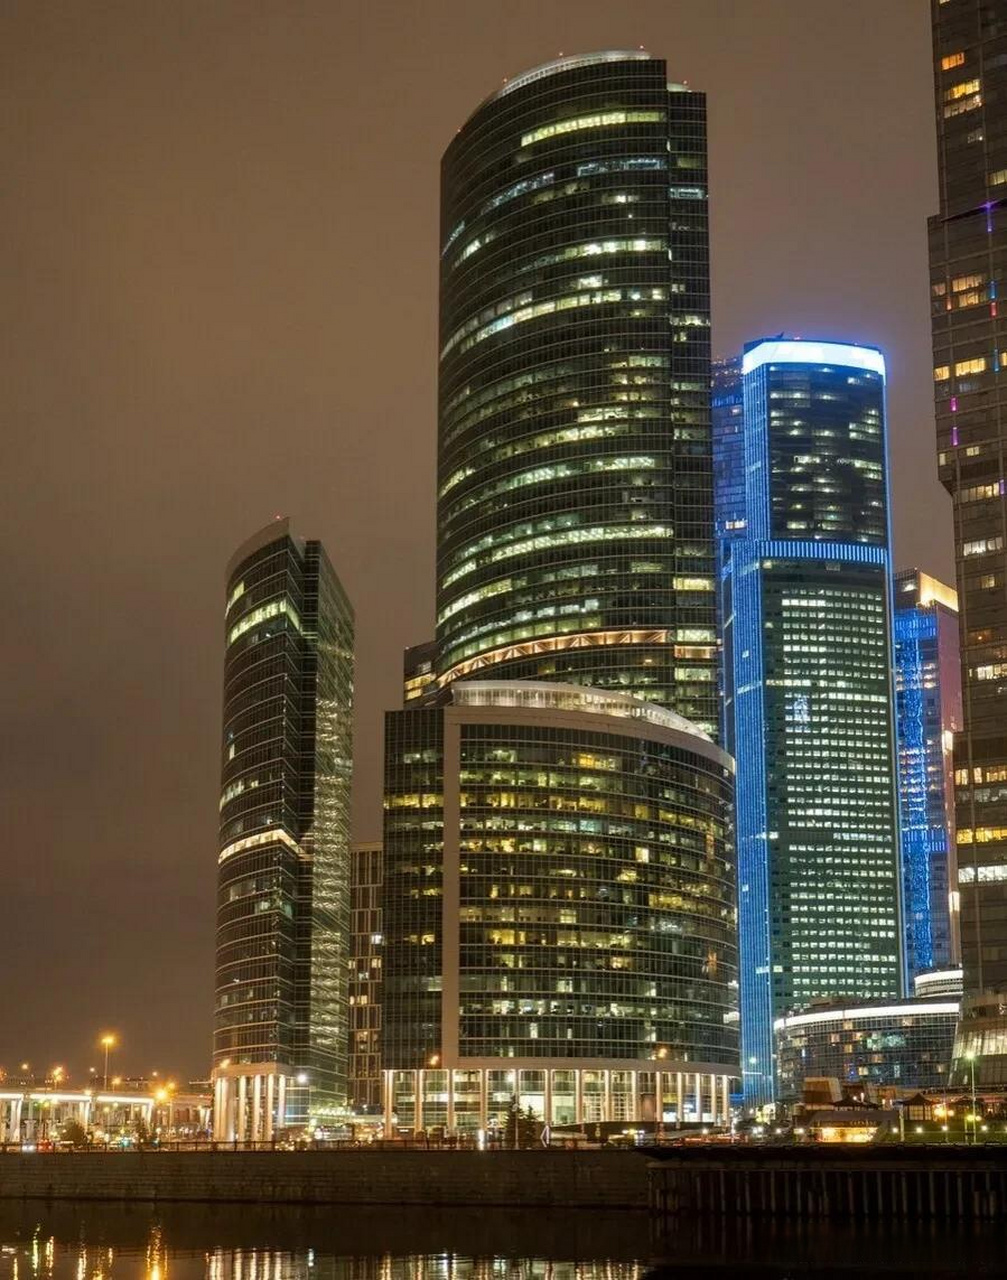 实拍俄罗斯莫斯科国际商业中心夜景 首都之城双塔灯火通明 当地时间